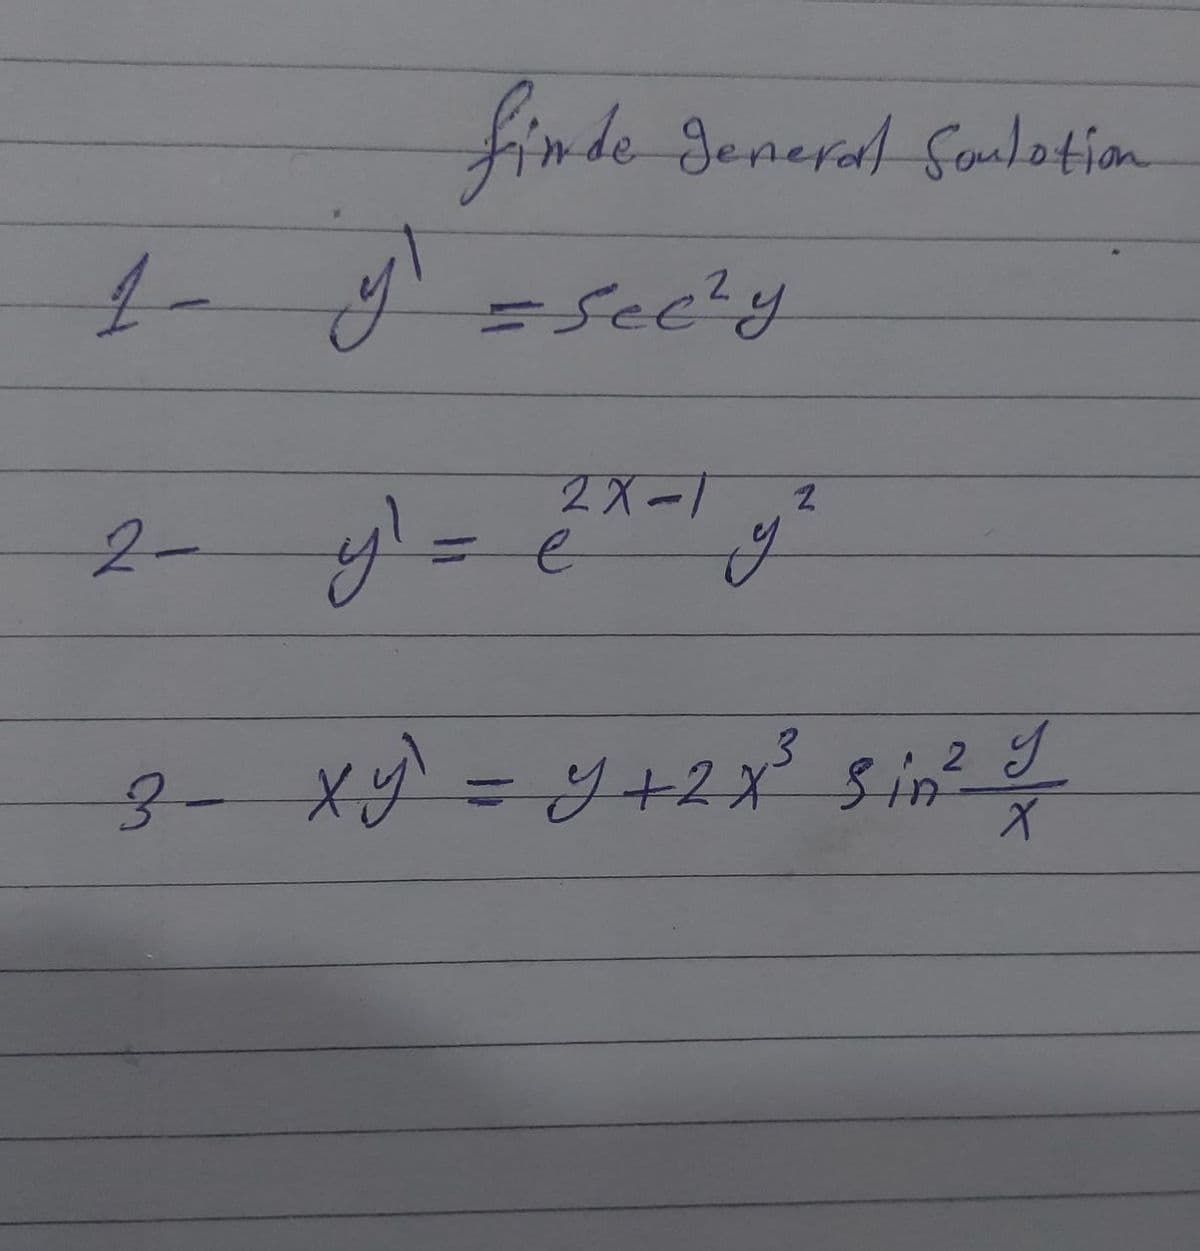 finde Senerad Somlation
2.
2X-1
2-y=
メ=ツ+2ポ 5.in0
